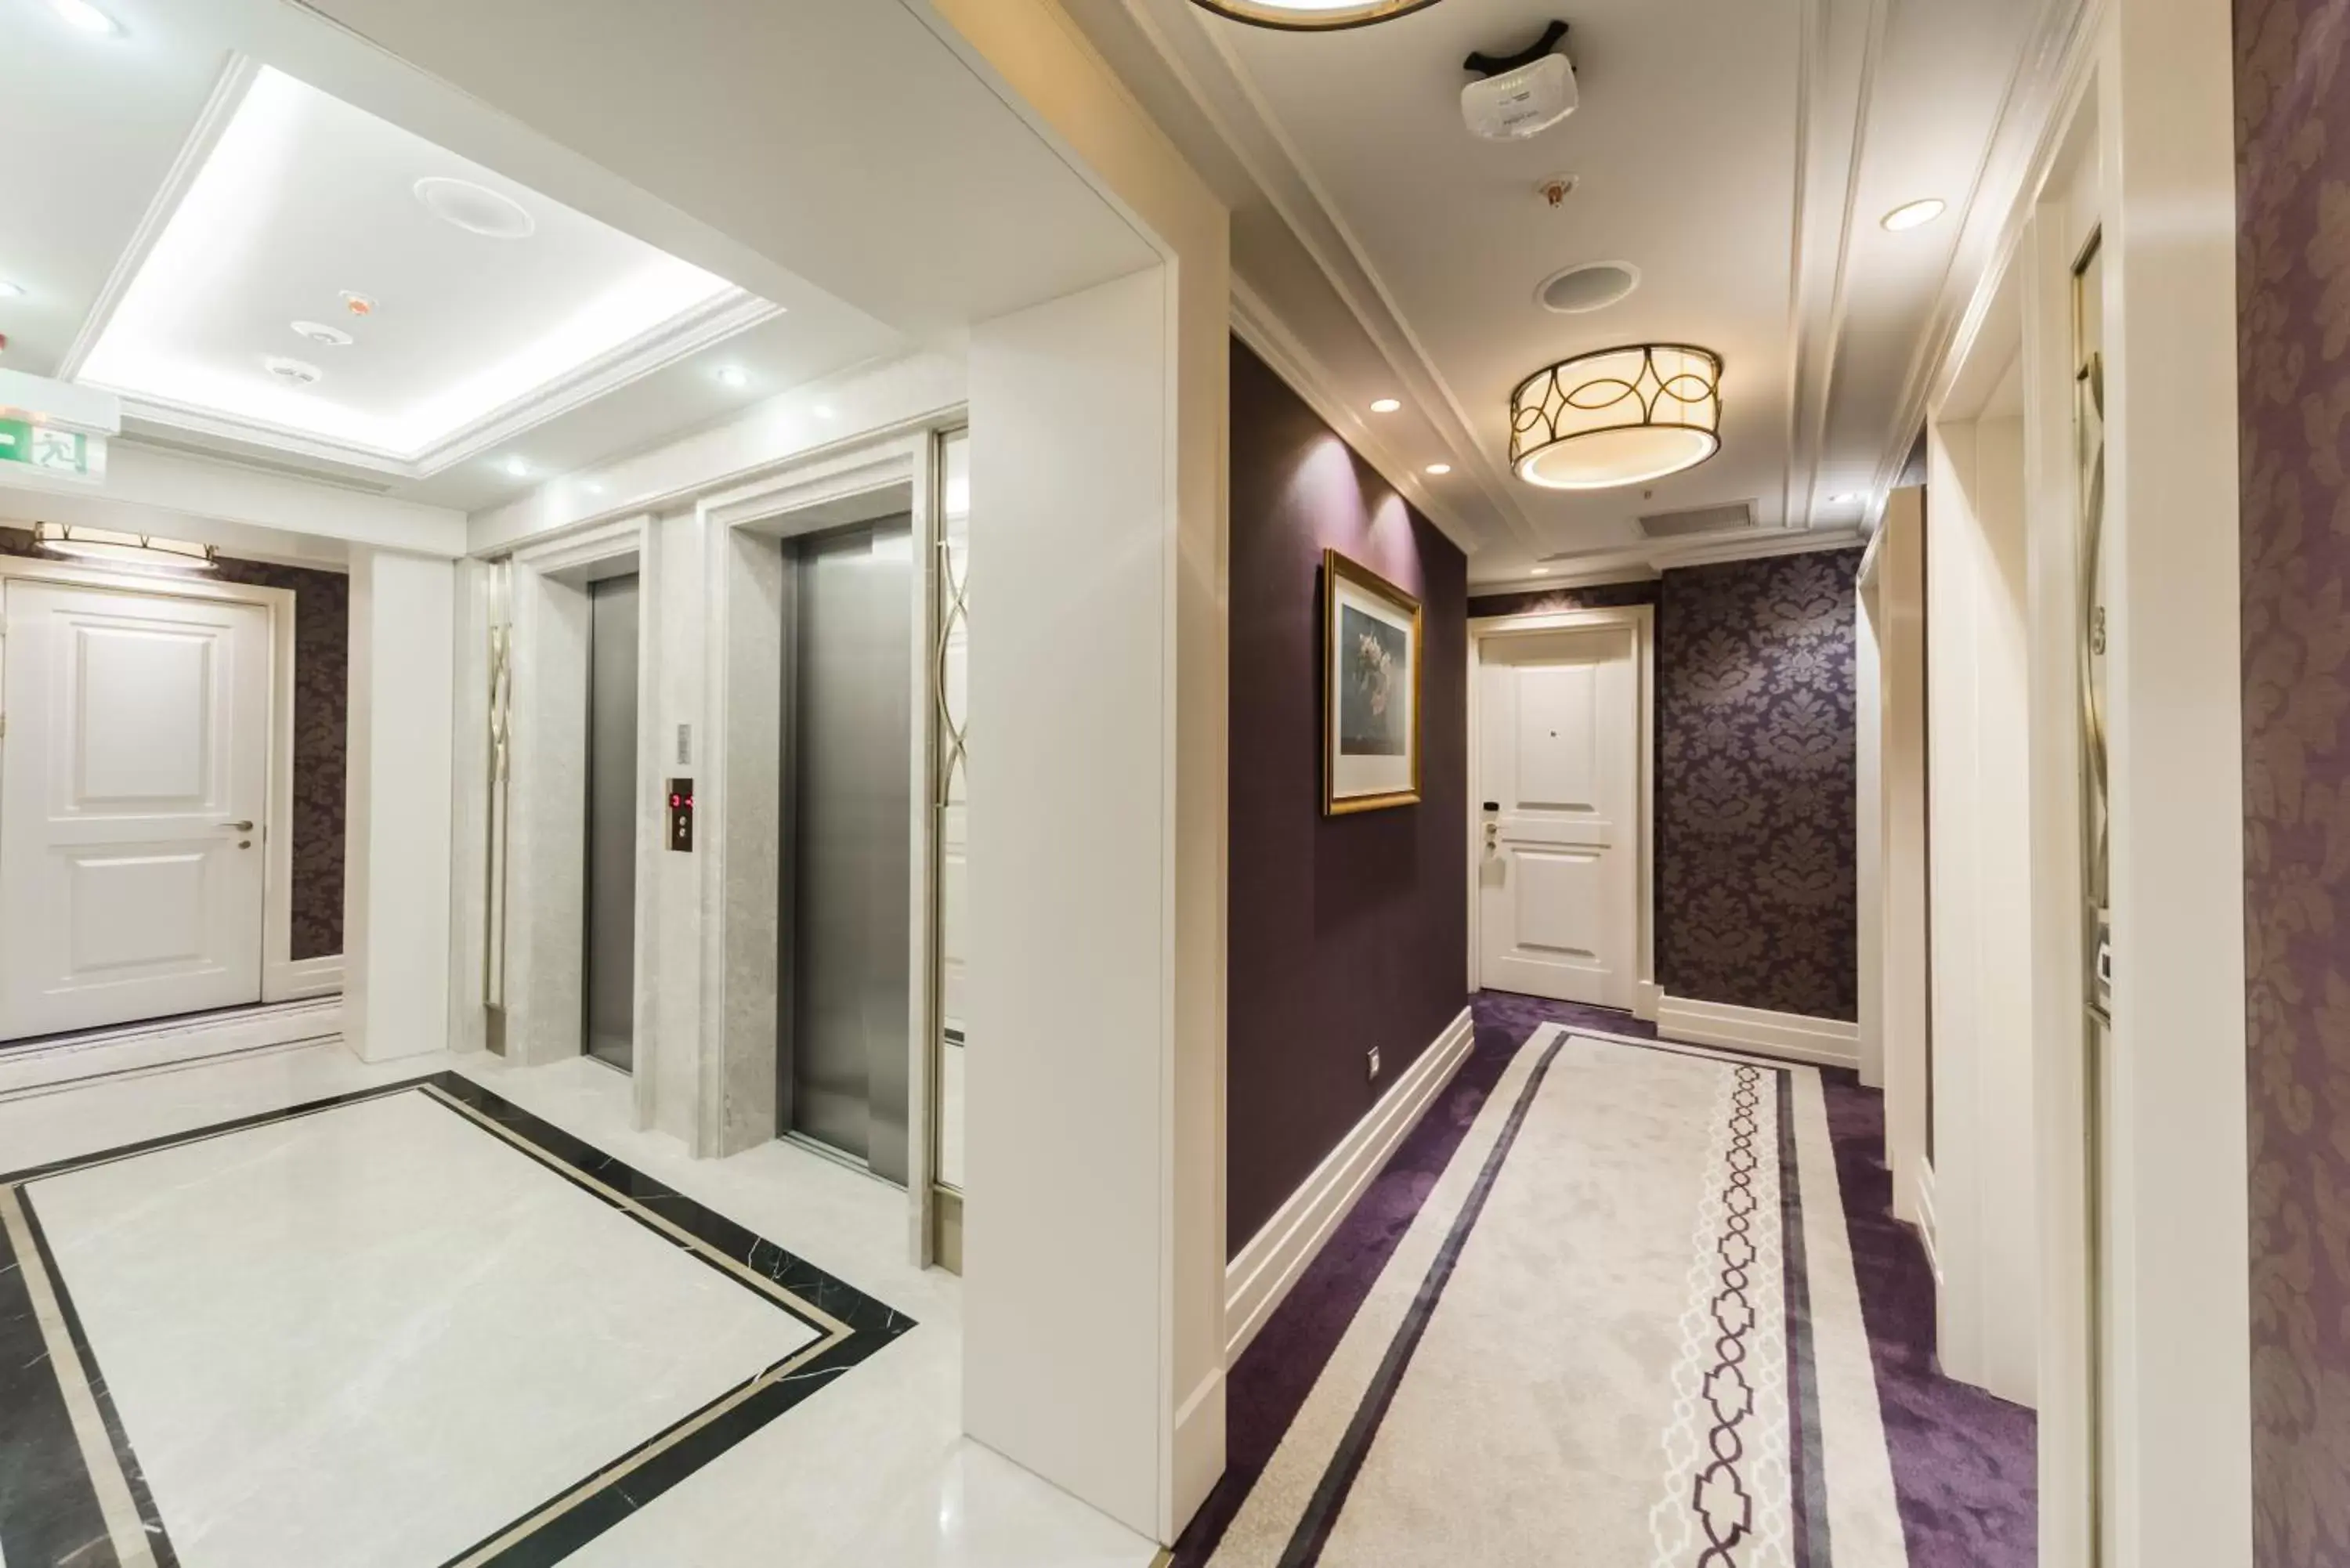 Lobby or reception in Arcade Hotel Istanbul